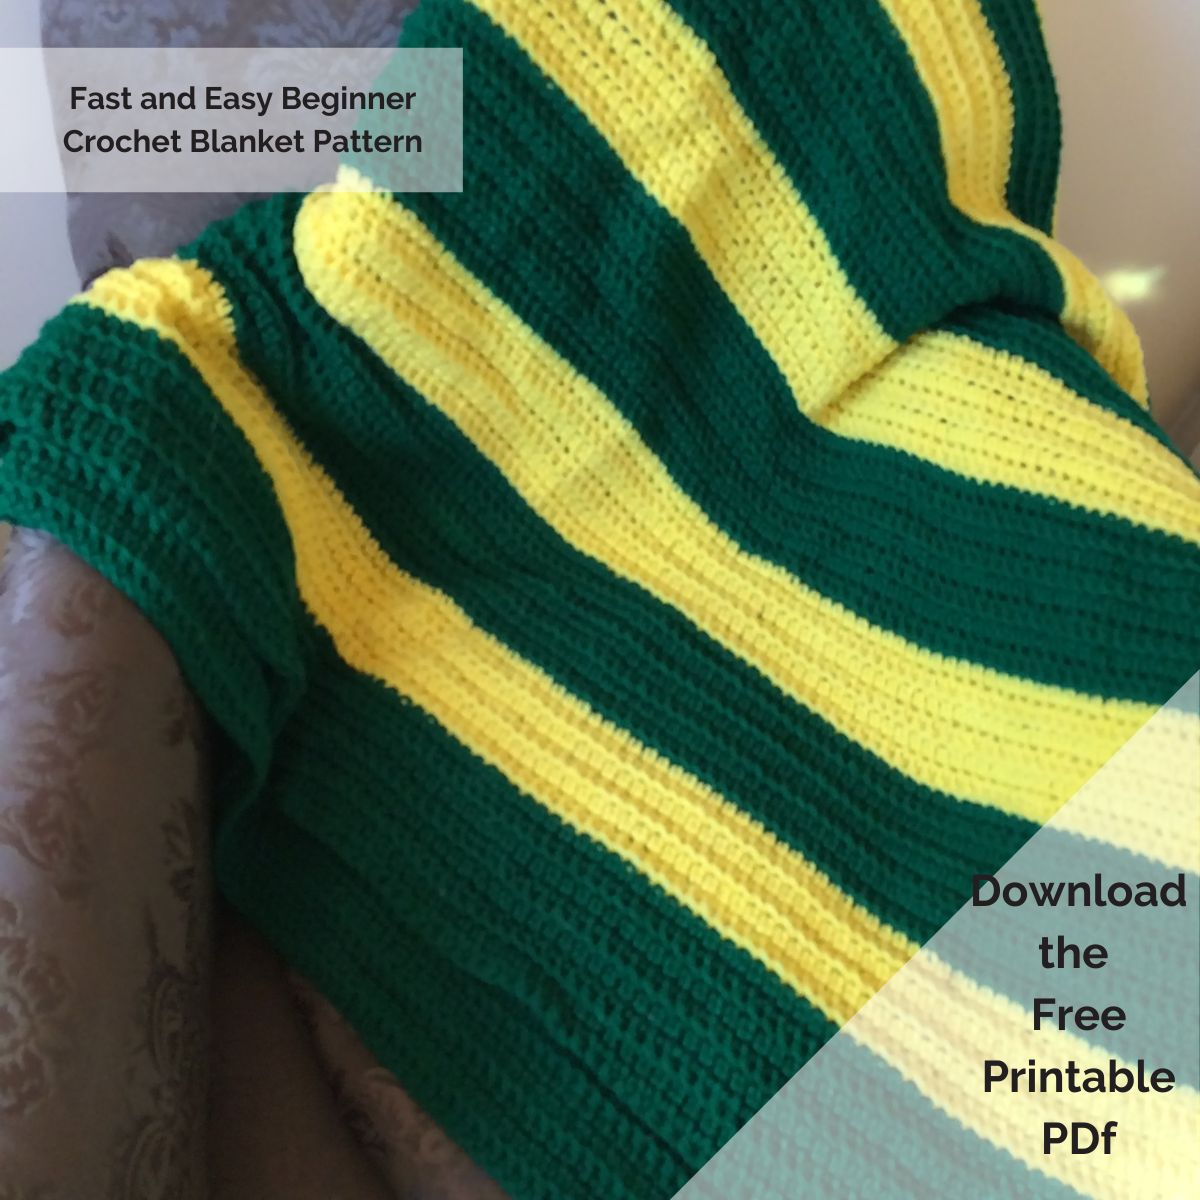 Fast and Easy Beginner Crochet Blanket Pattern